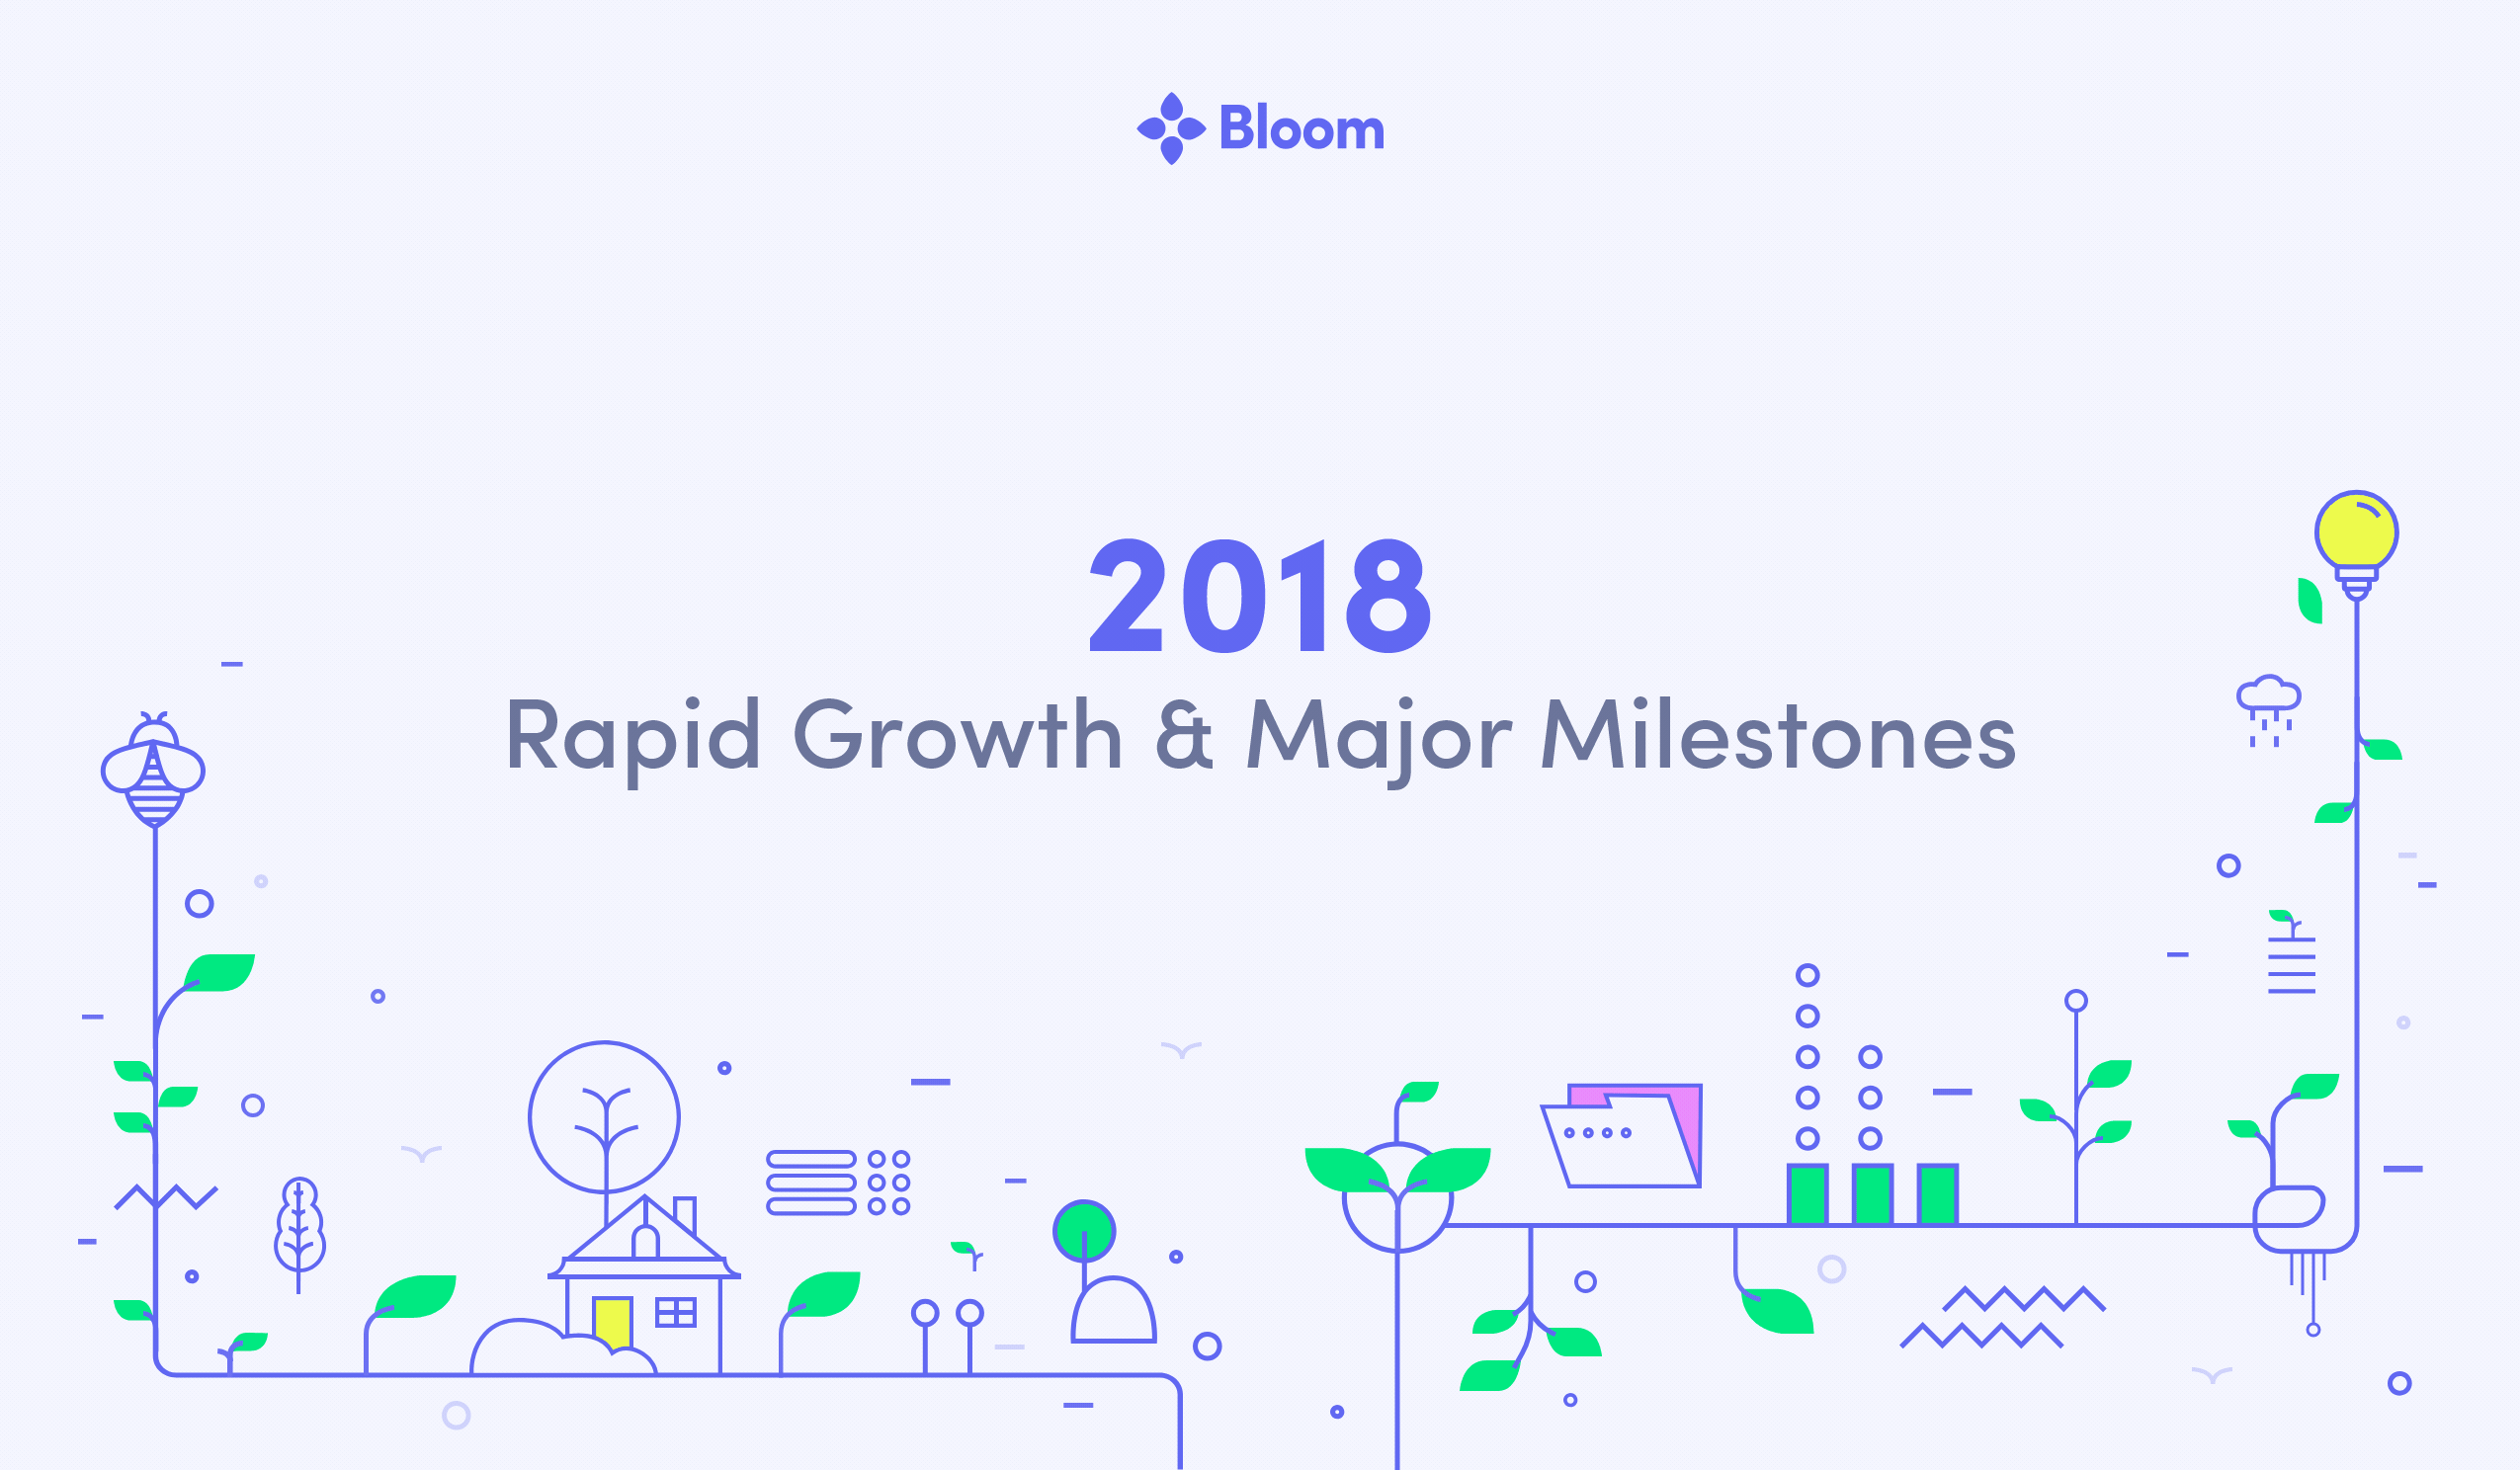 2018: Rapid Growth & Major Milestones